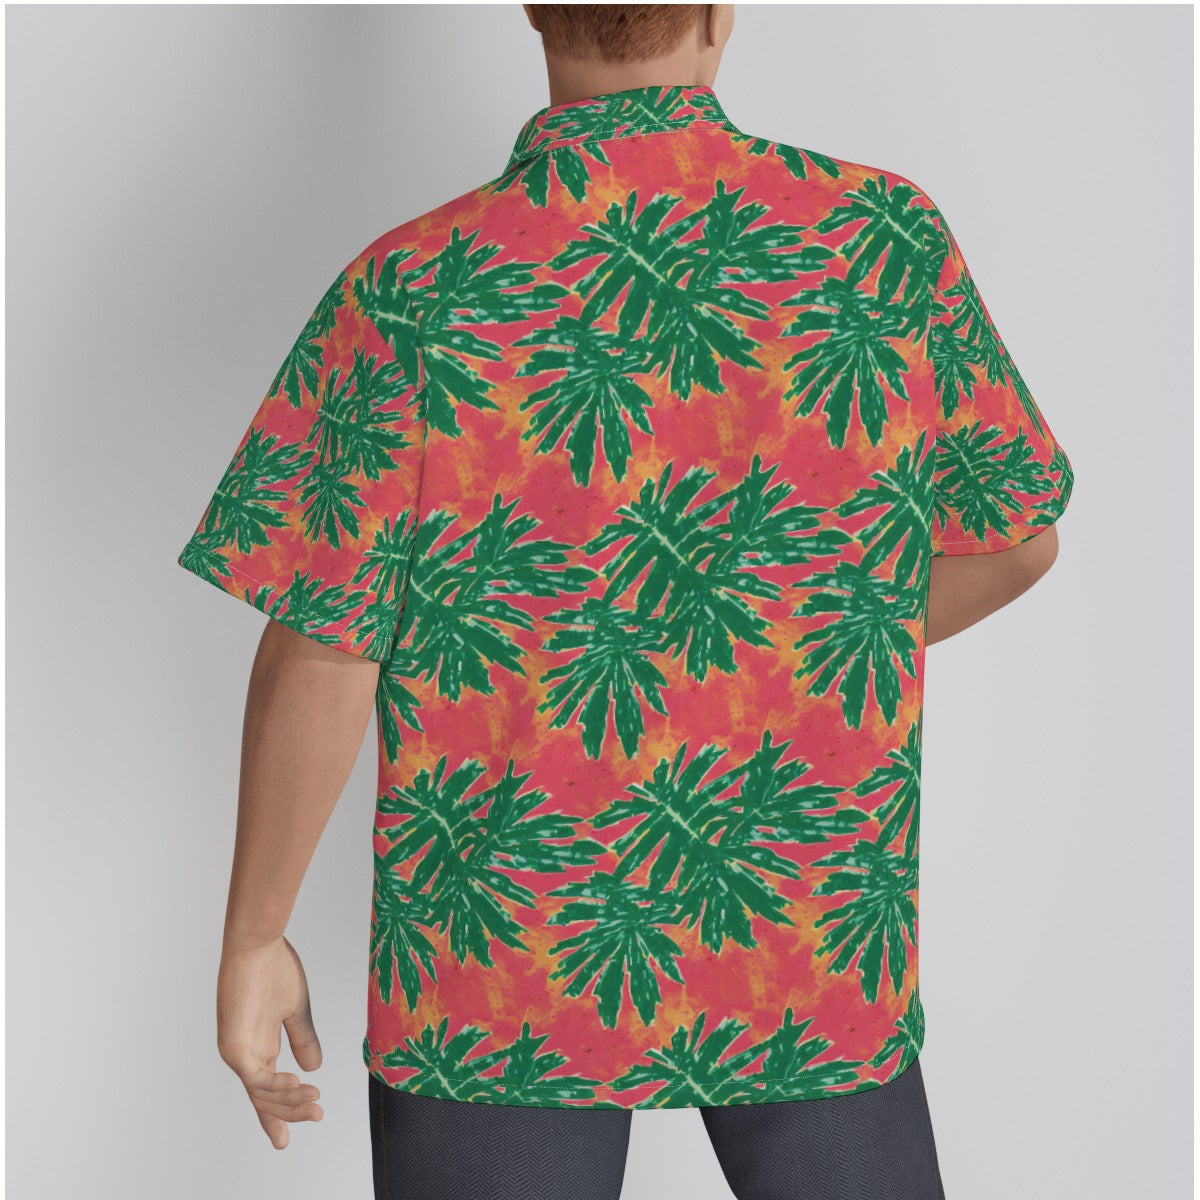 The Tomato Palm Tree Tropical Men's Hawaiian Shirt